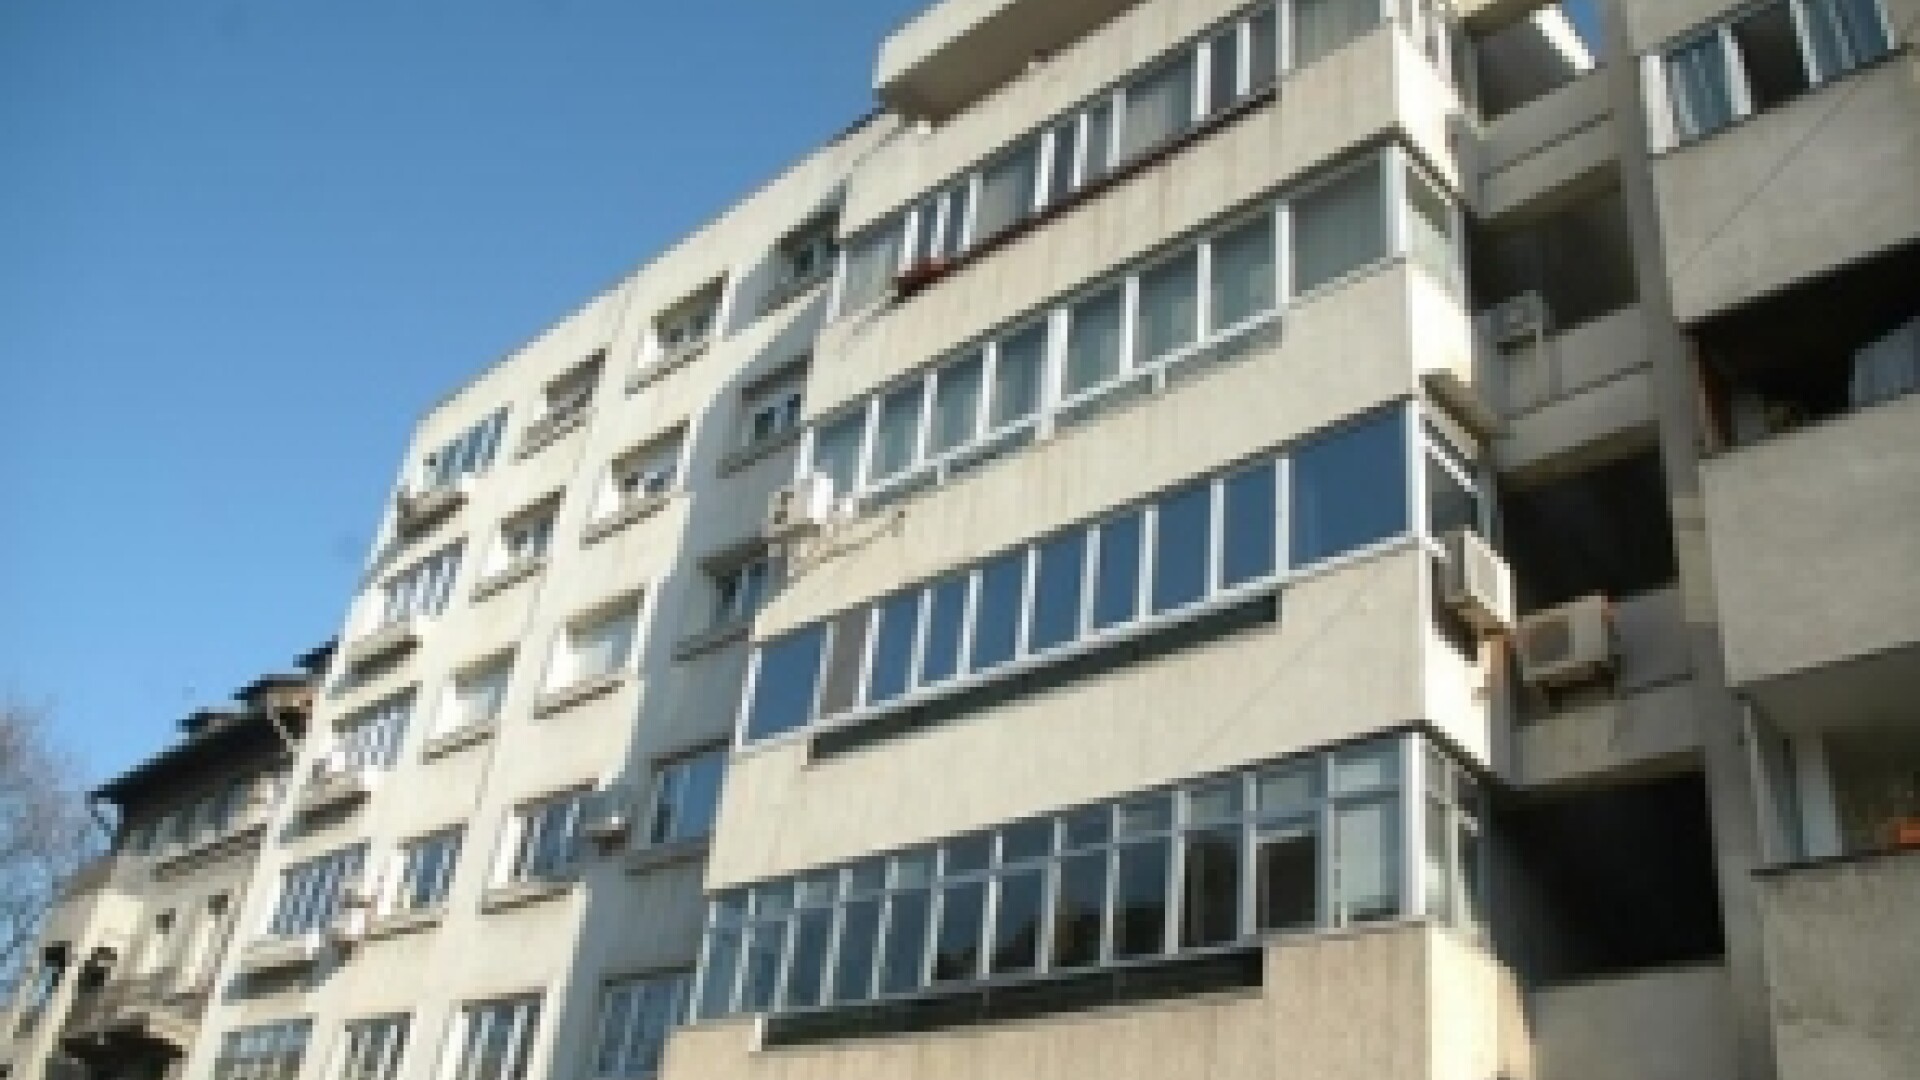 Oferta de apartamente vechi în Bucureşti a crescut cu 36